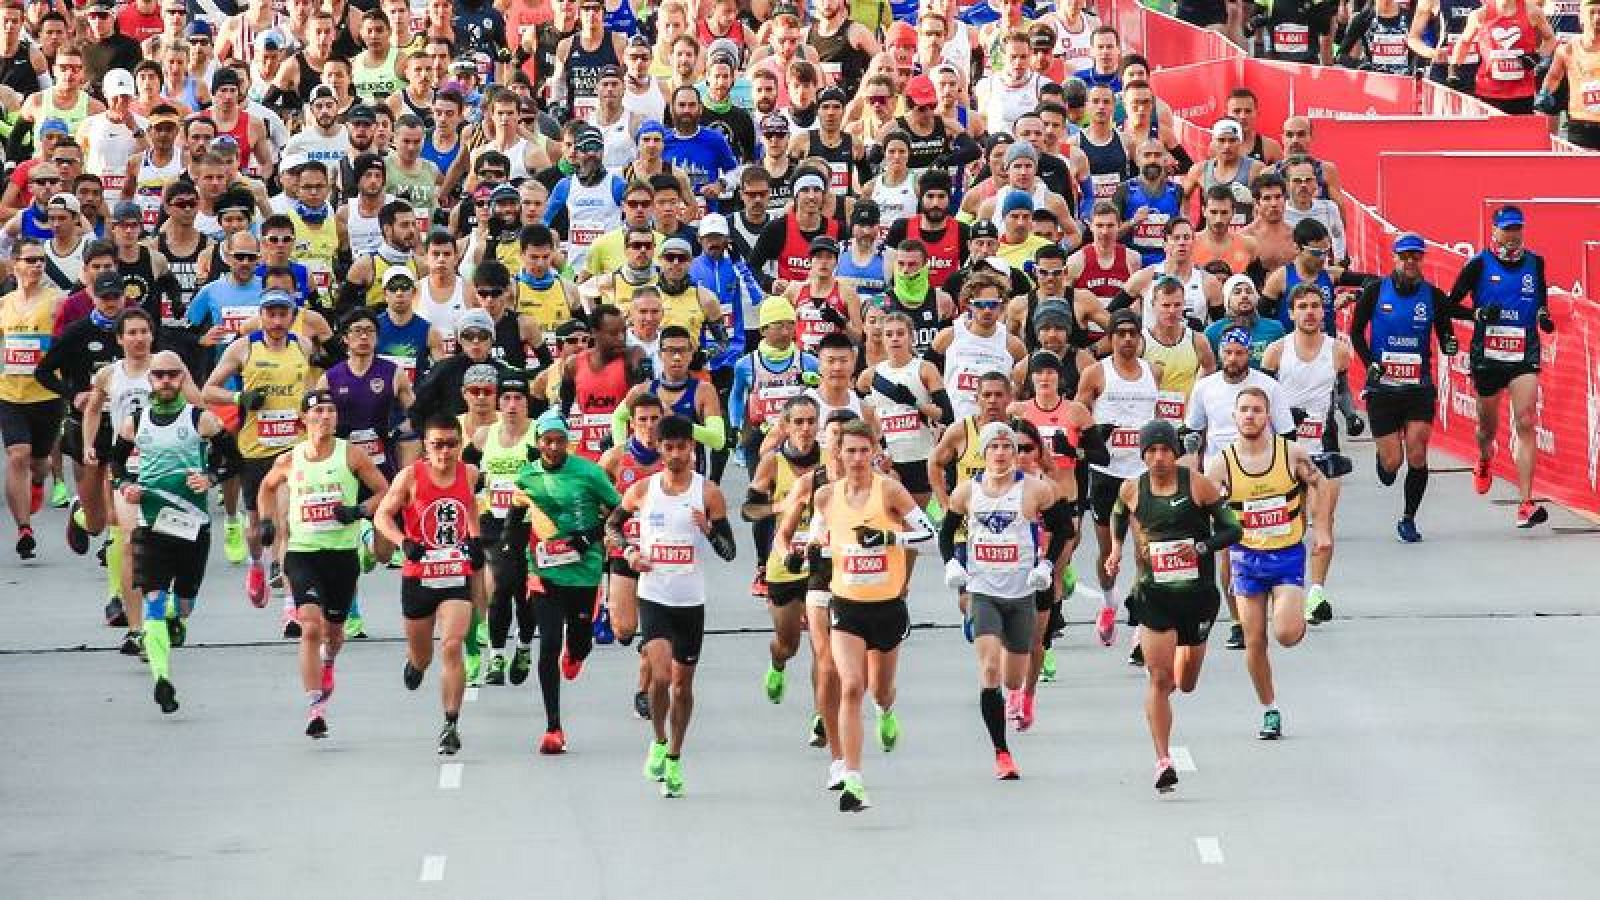 El COI plantea Sapporo como sede del maratón y marcha en Tokio 2020 